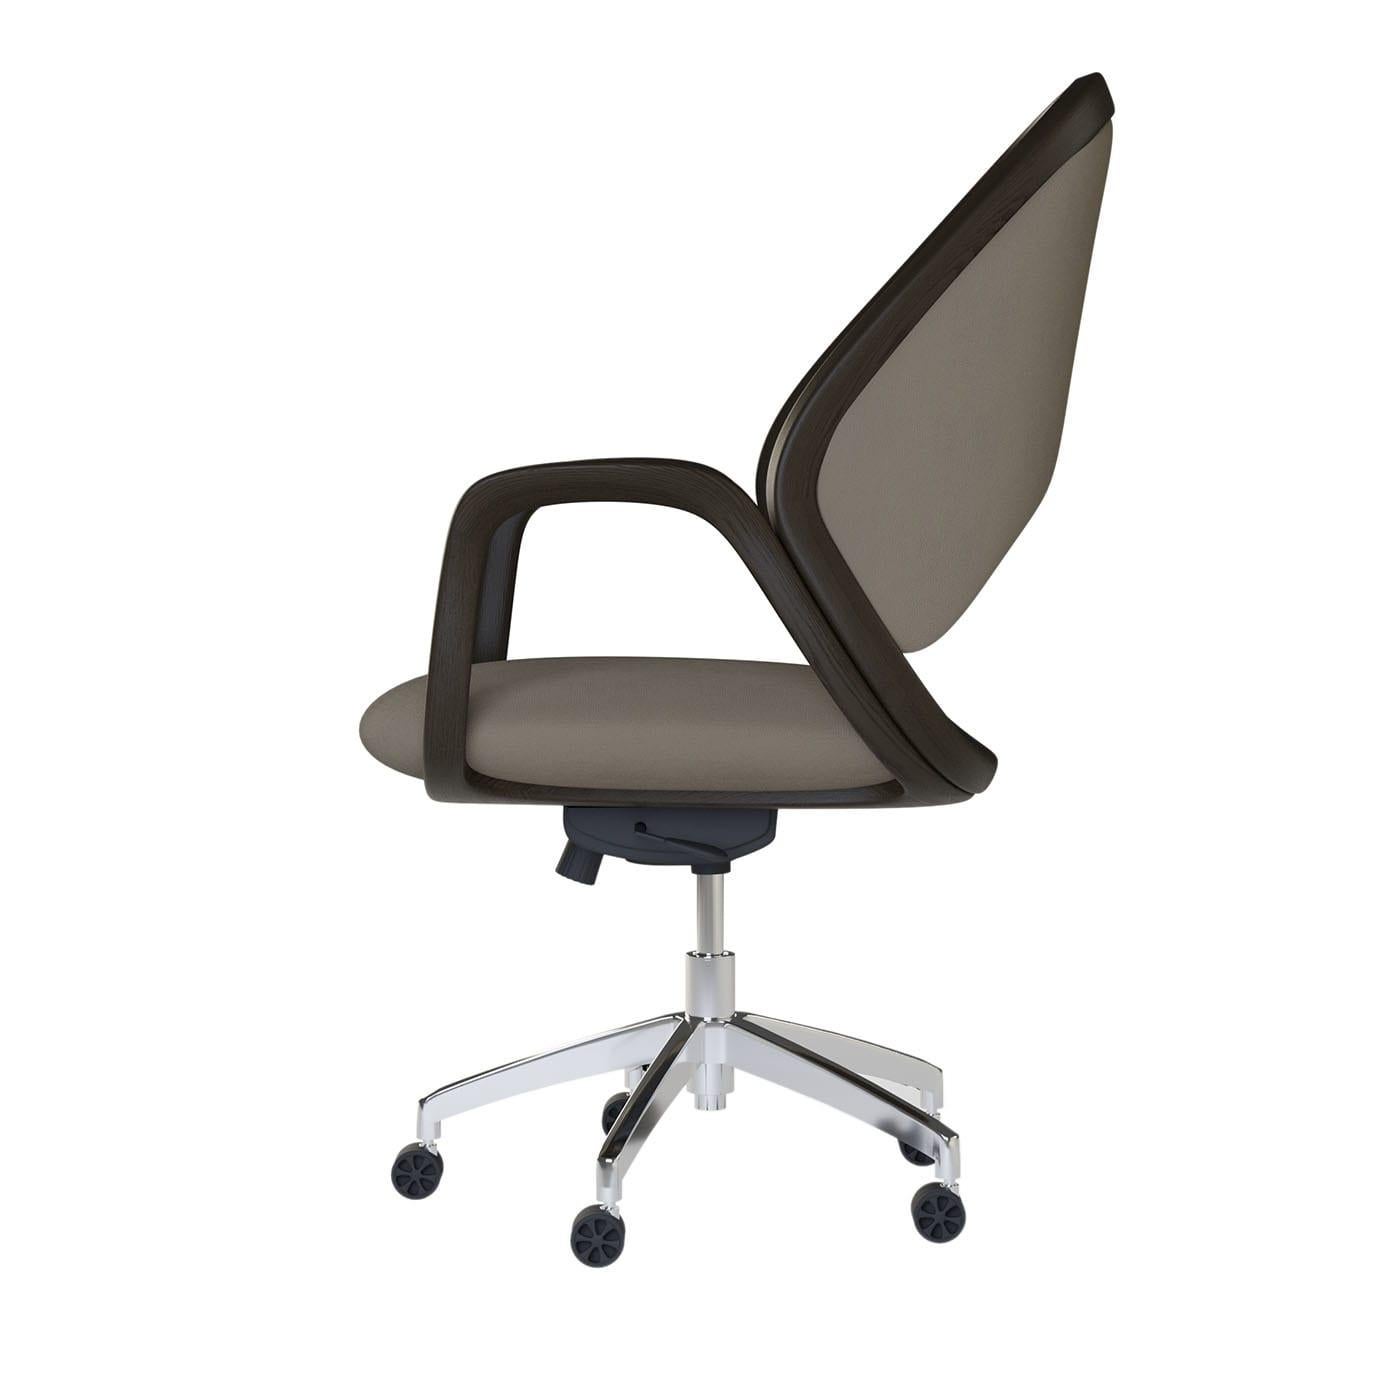 Alliant des qualités ergonomiques à une élégante esthétique contemporaine, ce fauteuil pivotant est un magnifique design de Libero Rutilo. Reposant sur une base pivotante réglable en hauteur en acier, il présente une coque en bois de frêne,